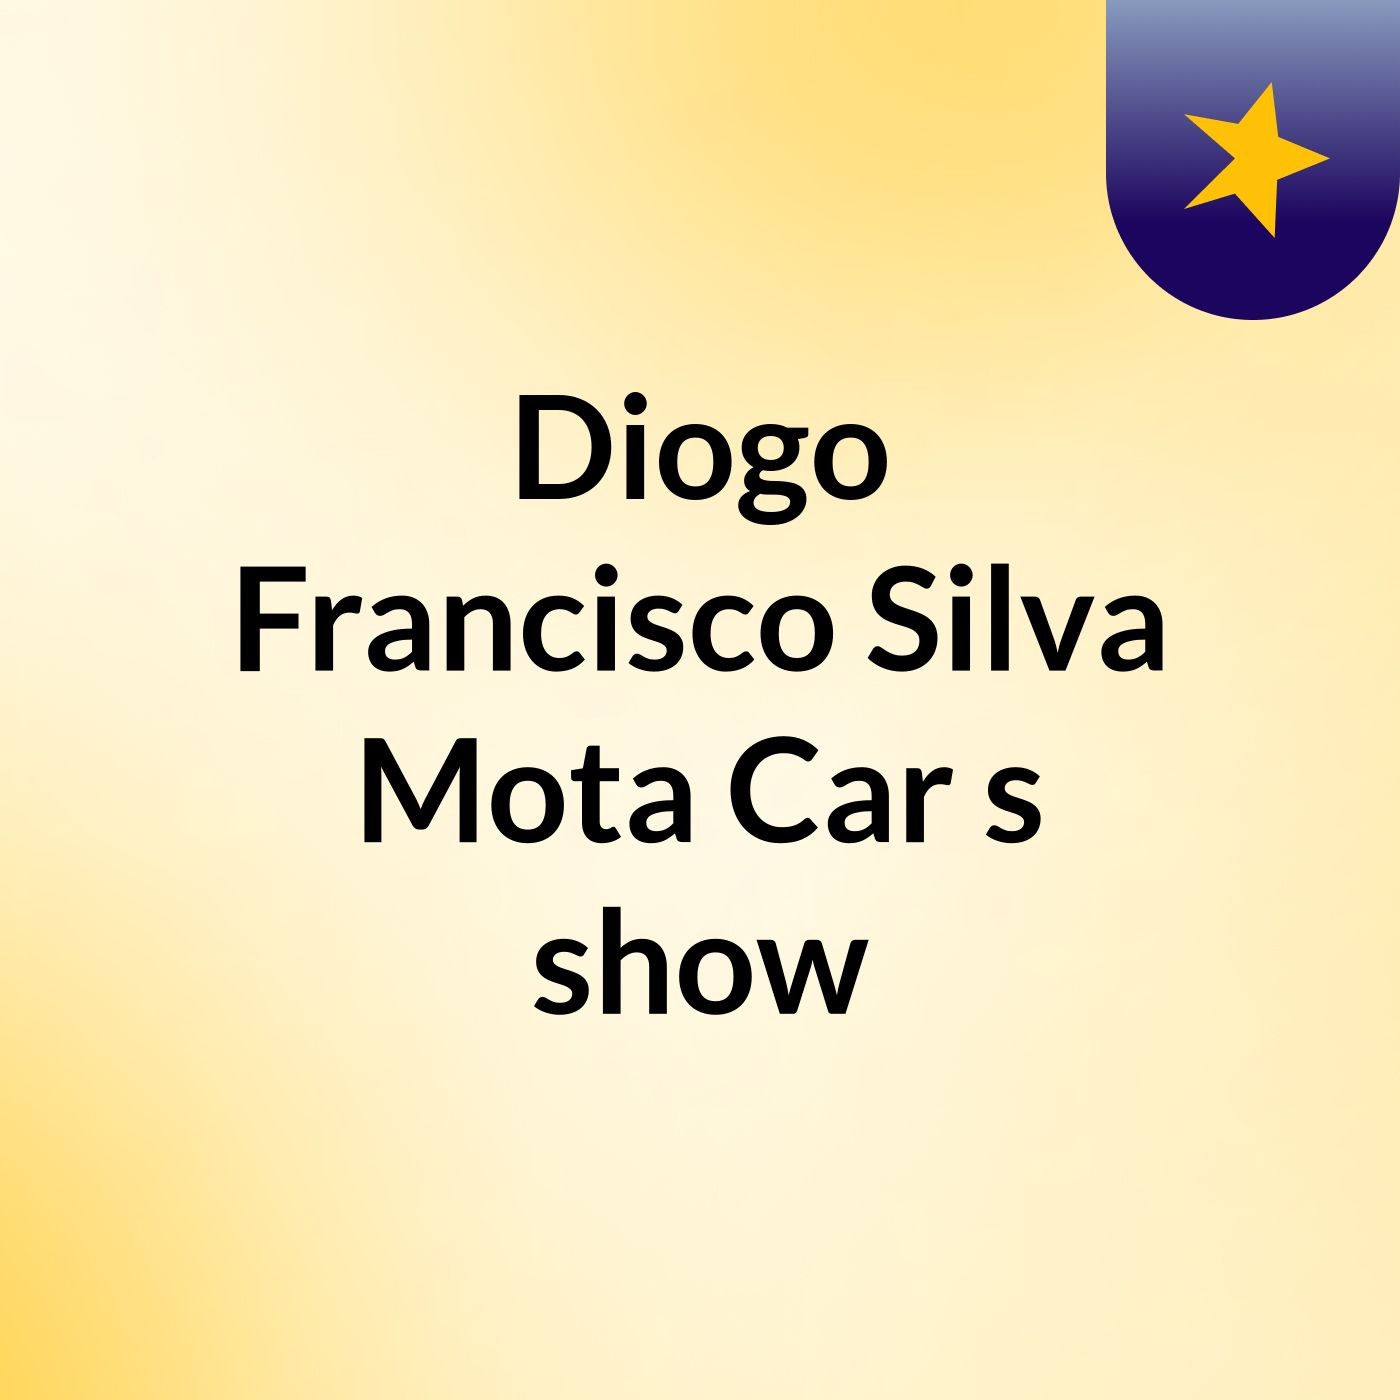 Diogo Francisco Silva Mota Car's show